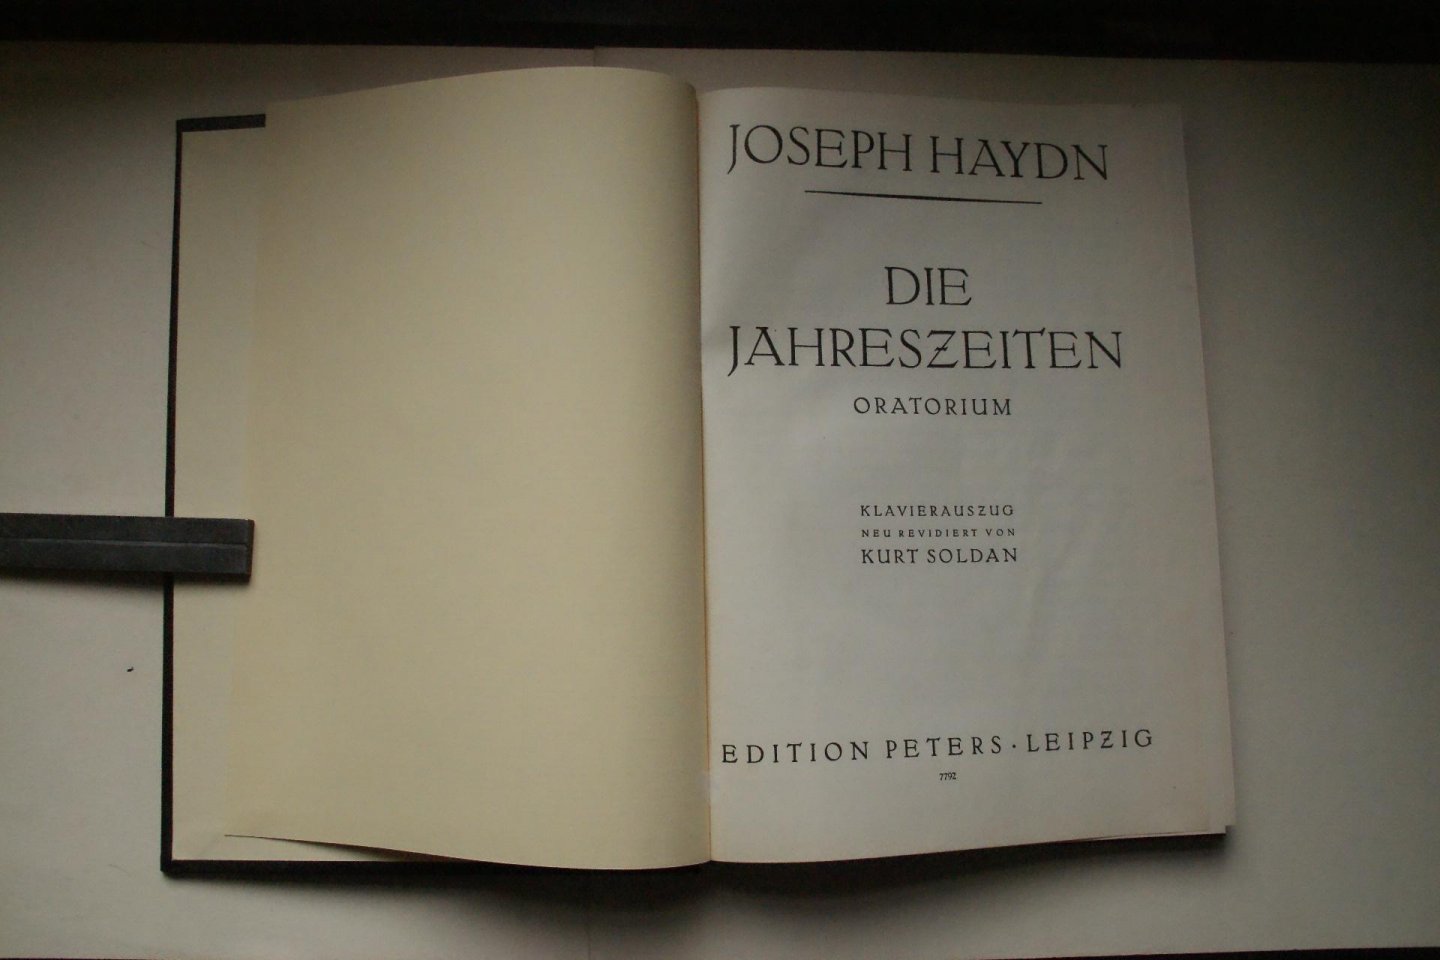 Haydn, Joseph - Die Jahreszeiten  oratorium  Klavierauszug neu revidiert von Kurt Soldan